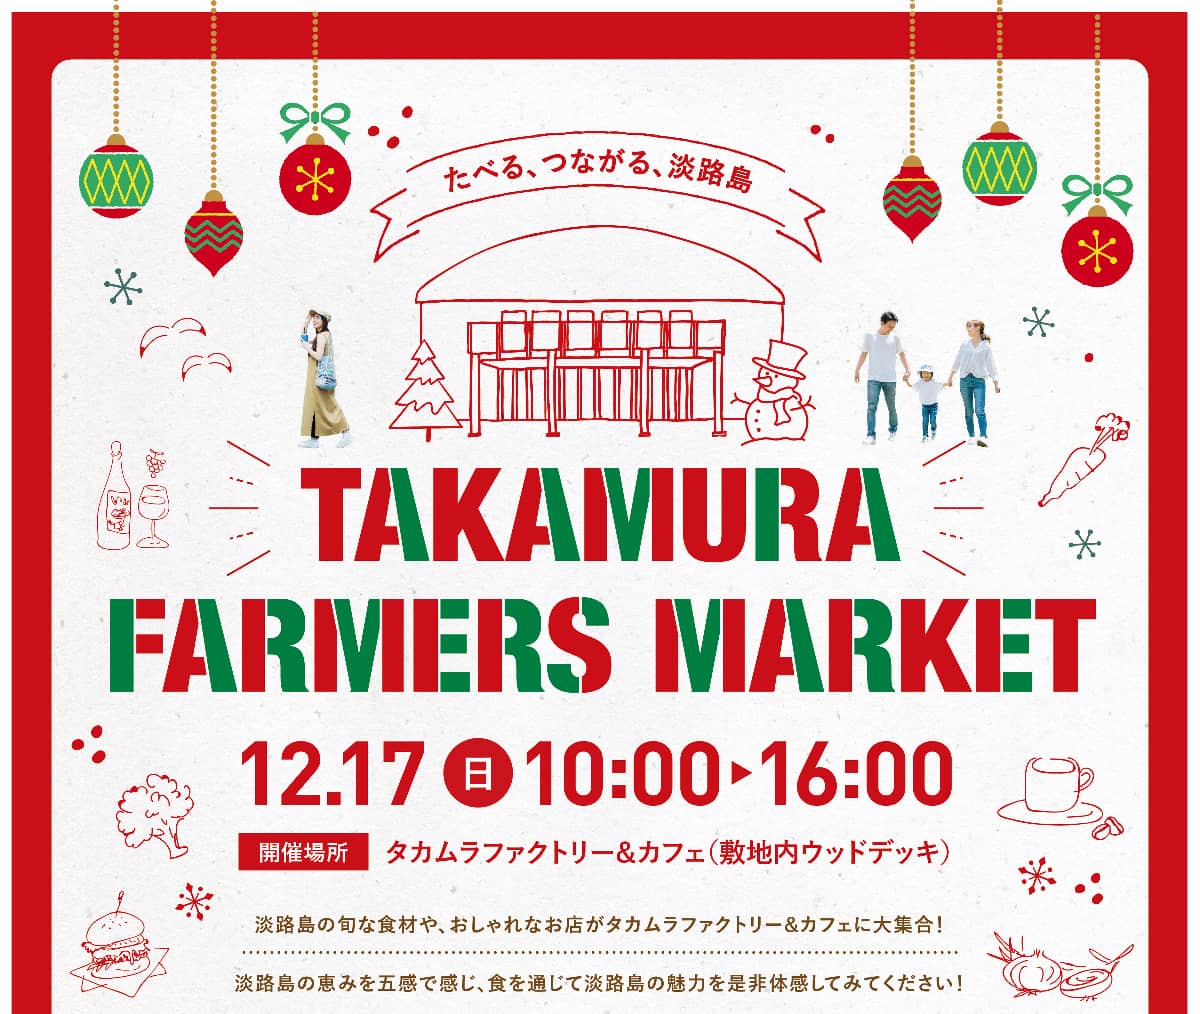 毎月第3日曜日に開催「TAKAMURA FARMERS MARKET」淡路市 [画像]